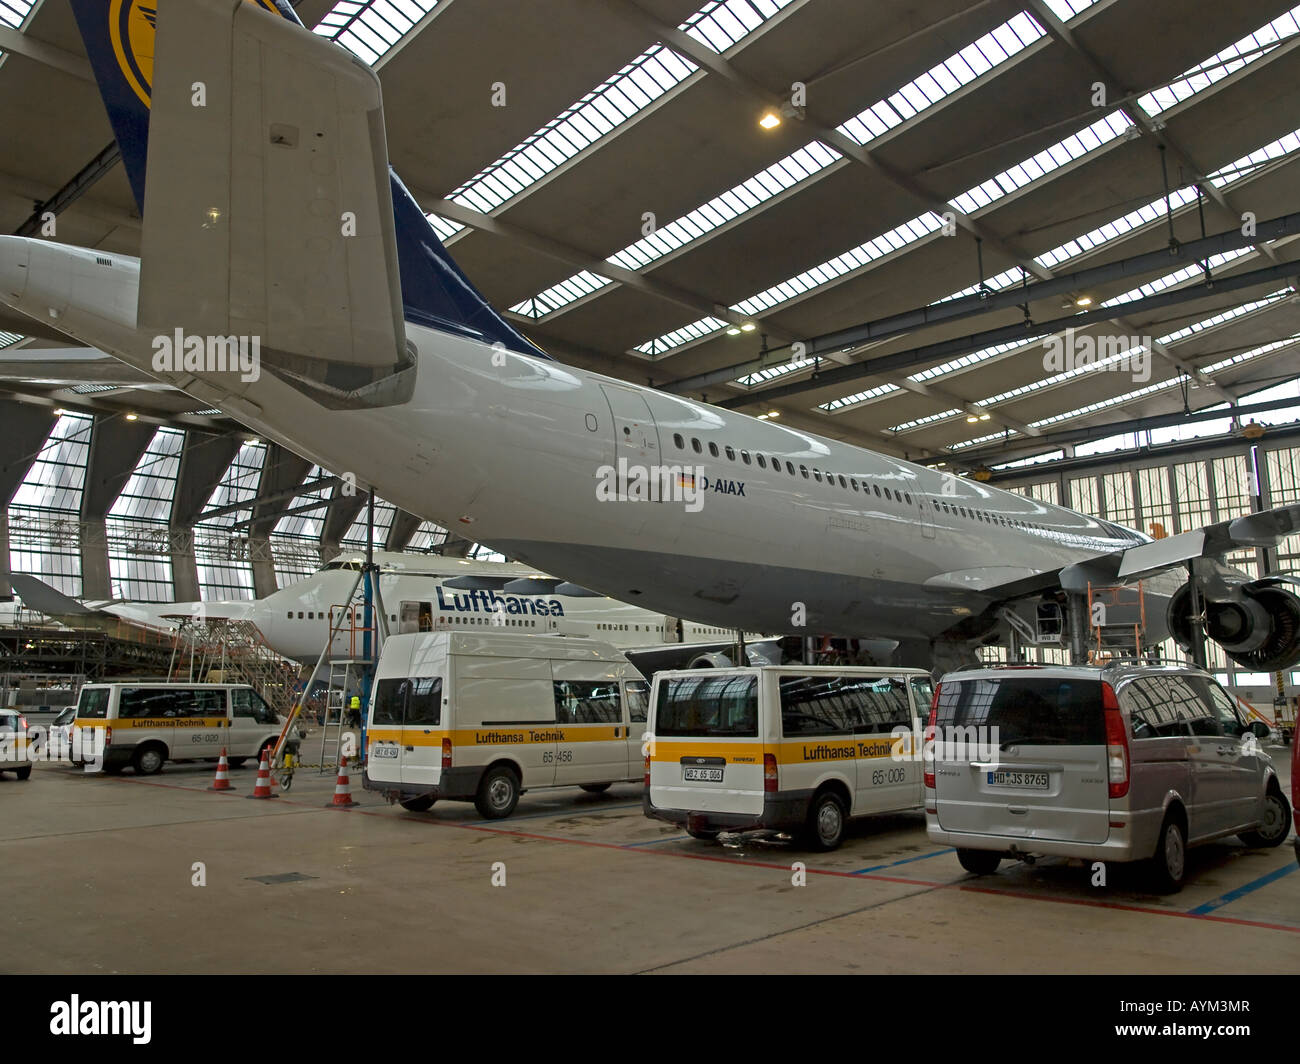 Flugzeug Airbus A 340 Lufthansa Service Halle Hangar Flughafen Fraport Frankfurt am Main Hessen Deutschland Stockfoto